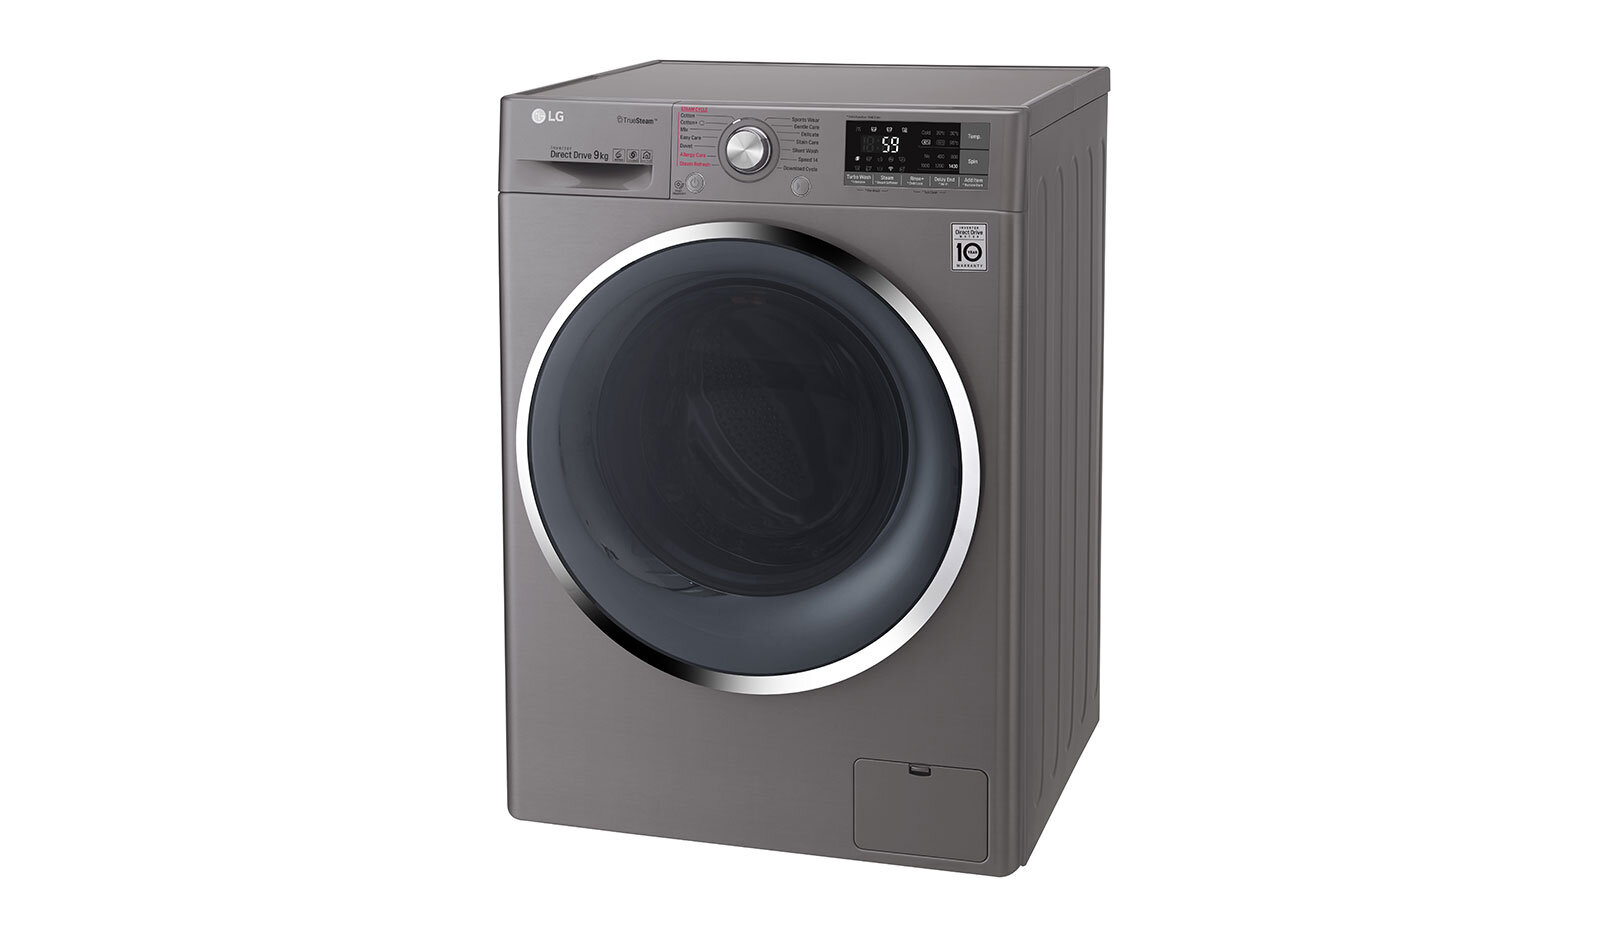 Máy giặt LG FV1409S2V với công nghệ giặt 6 chuyển động